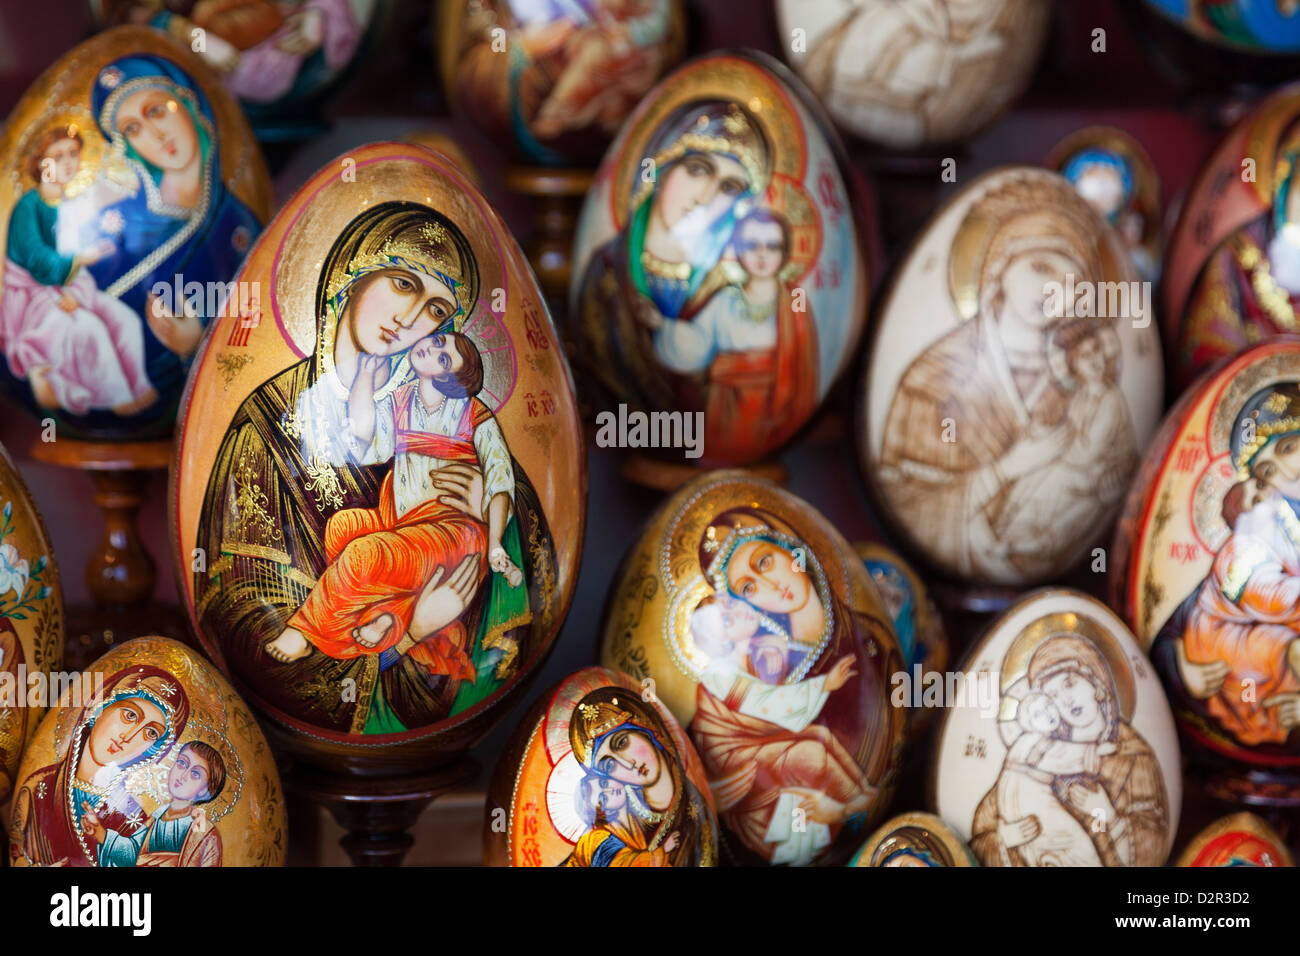 Malte religiöse Eiern für Verkauf, St. Petersburg, Russland, Europa Stockfoto